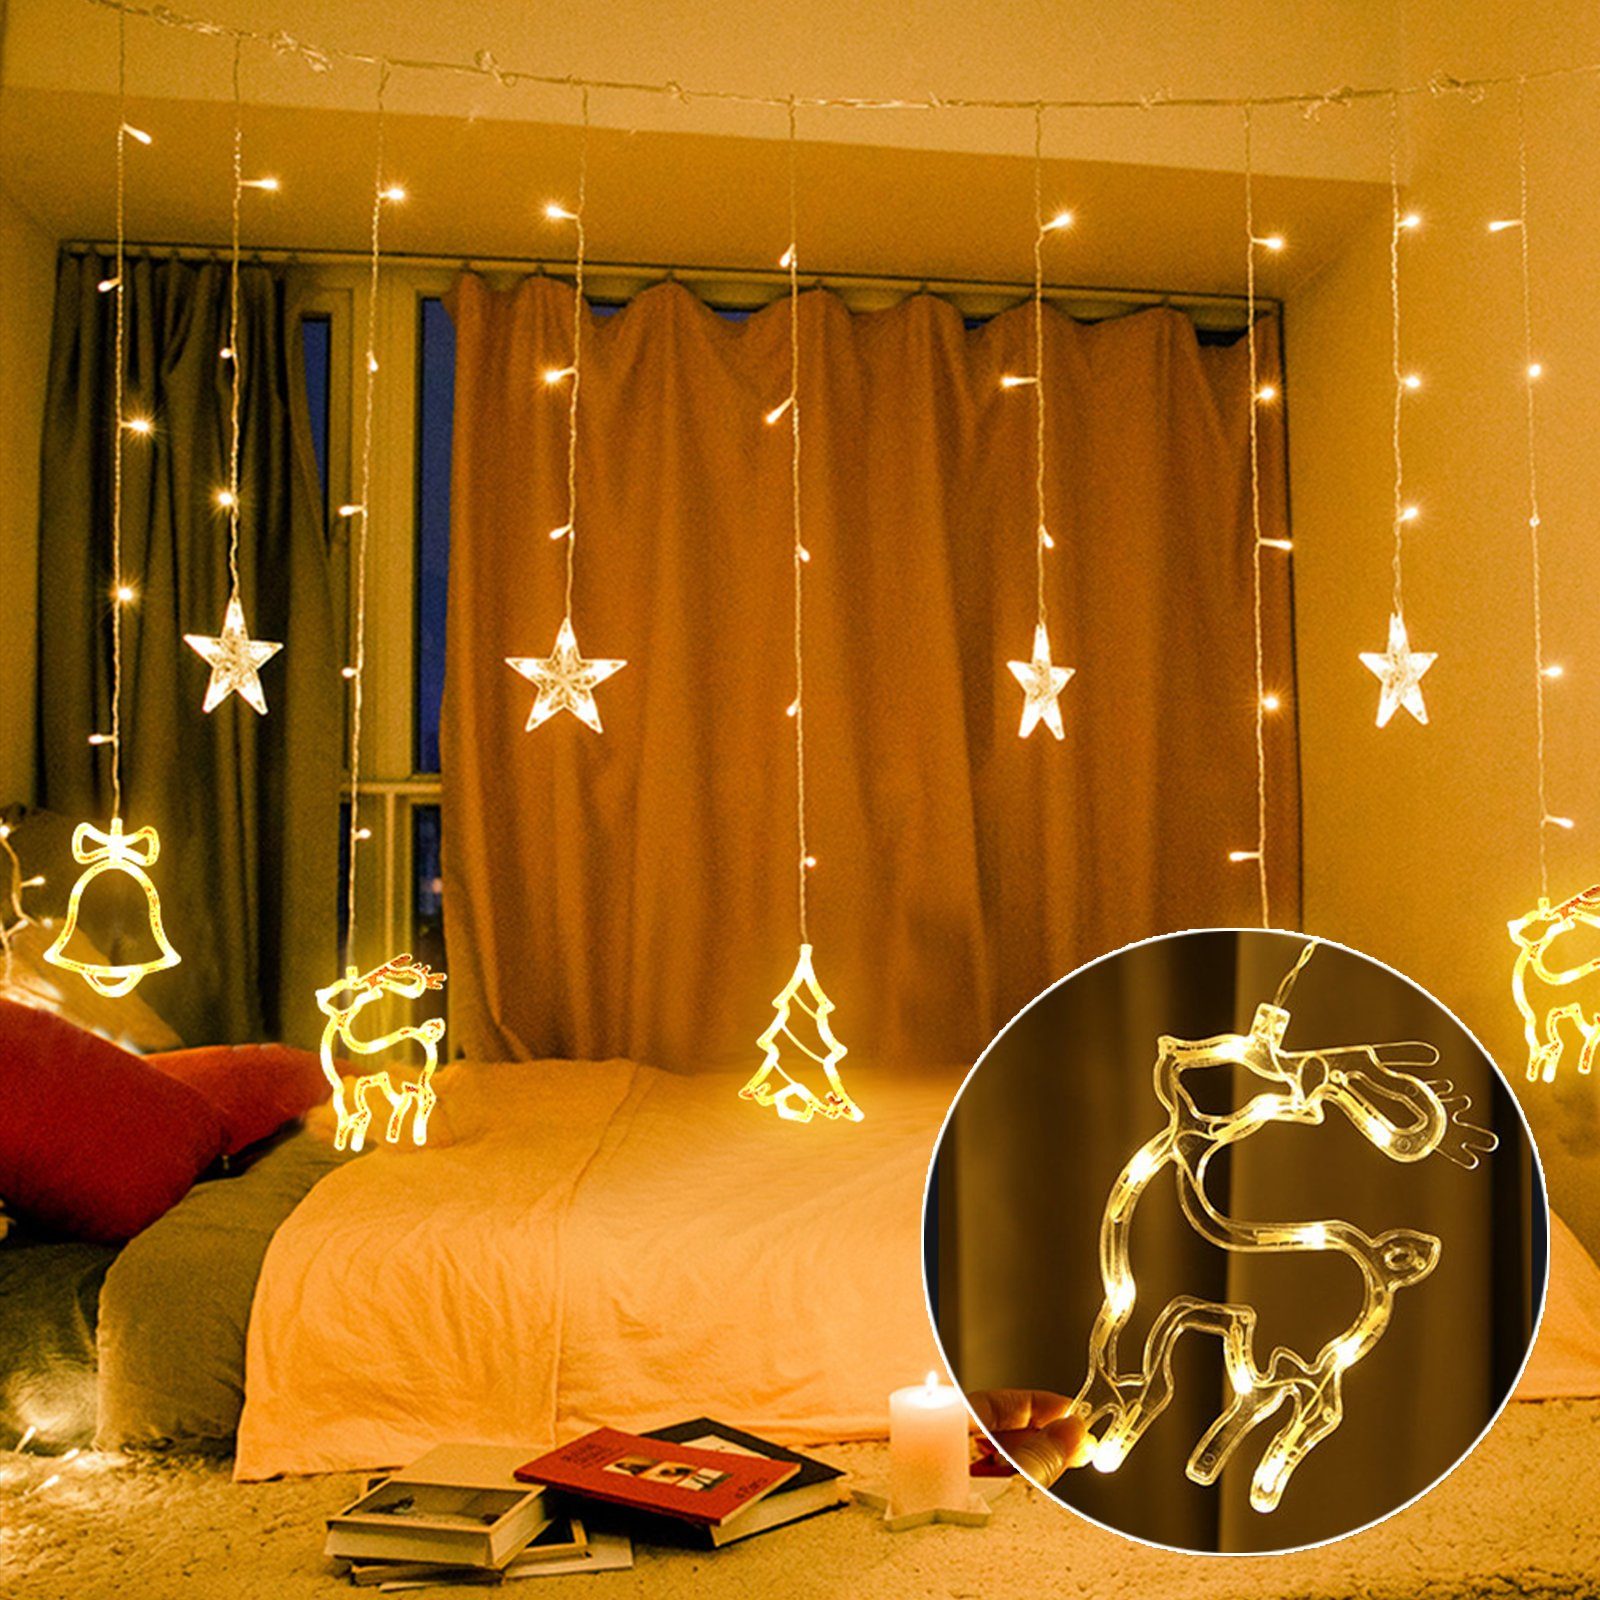 2x1m LED Lichterkette Lichtervorhang Sterne Fenster Party Deko Innen Beleuchtung 